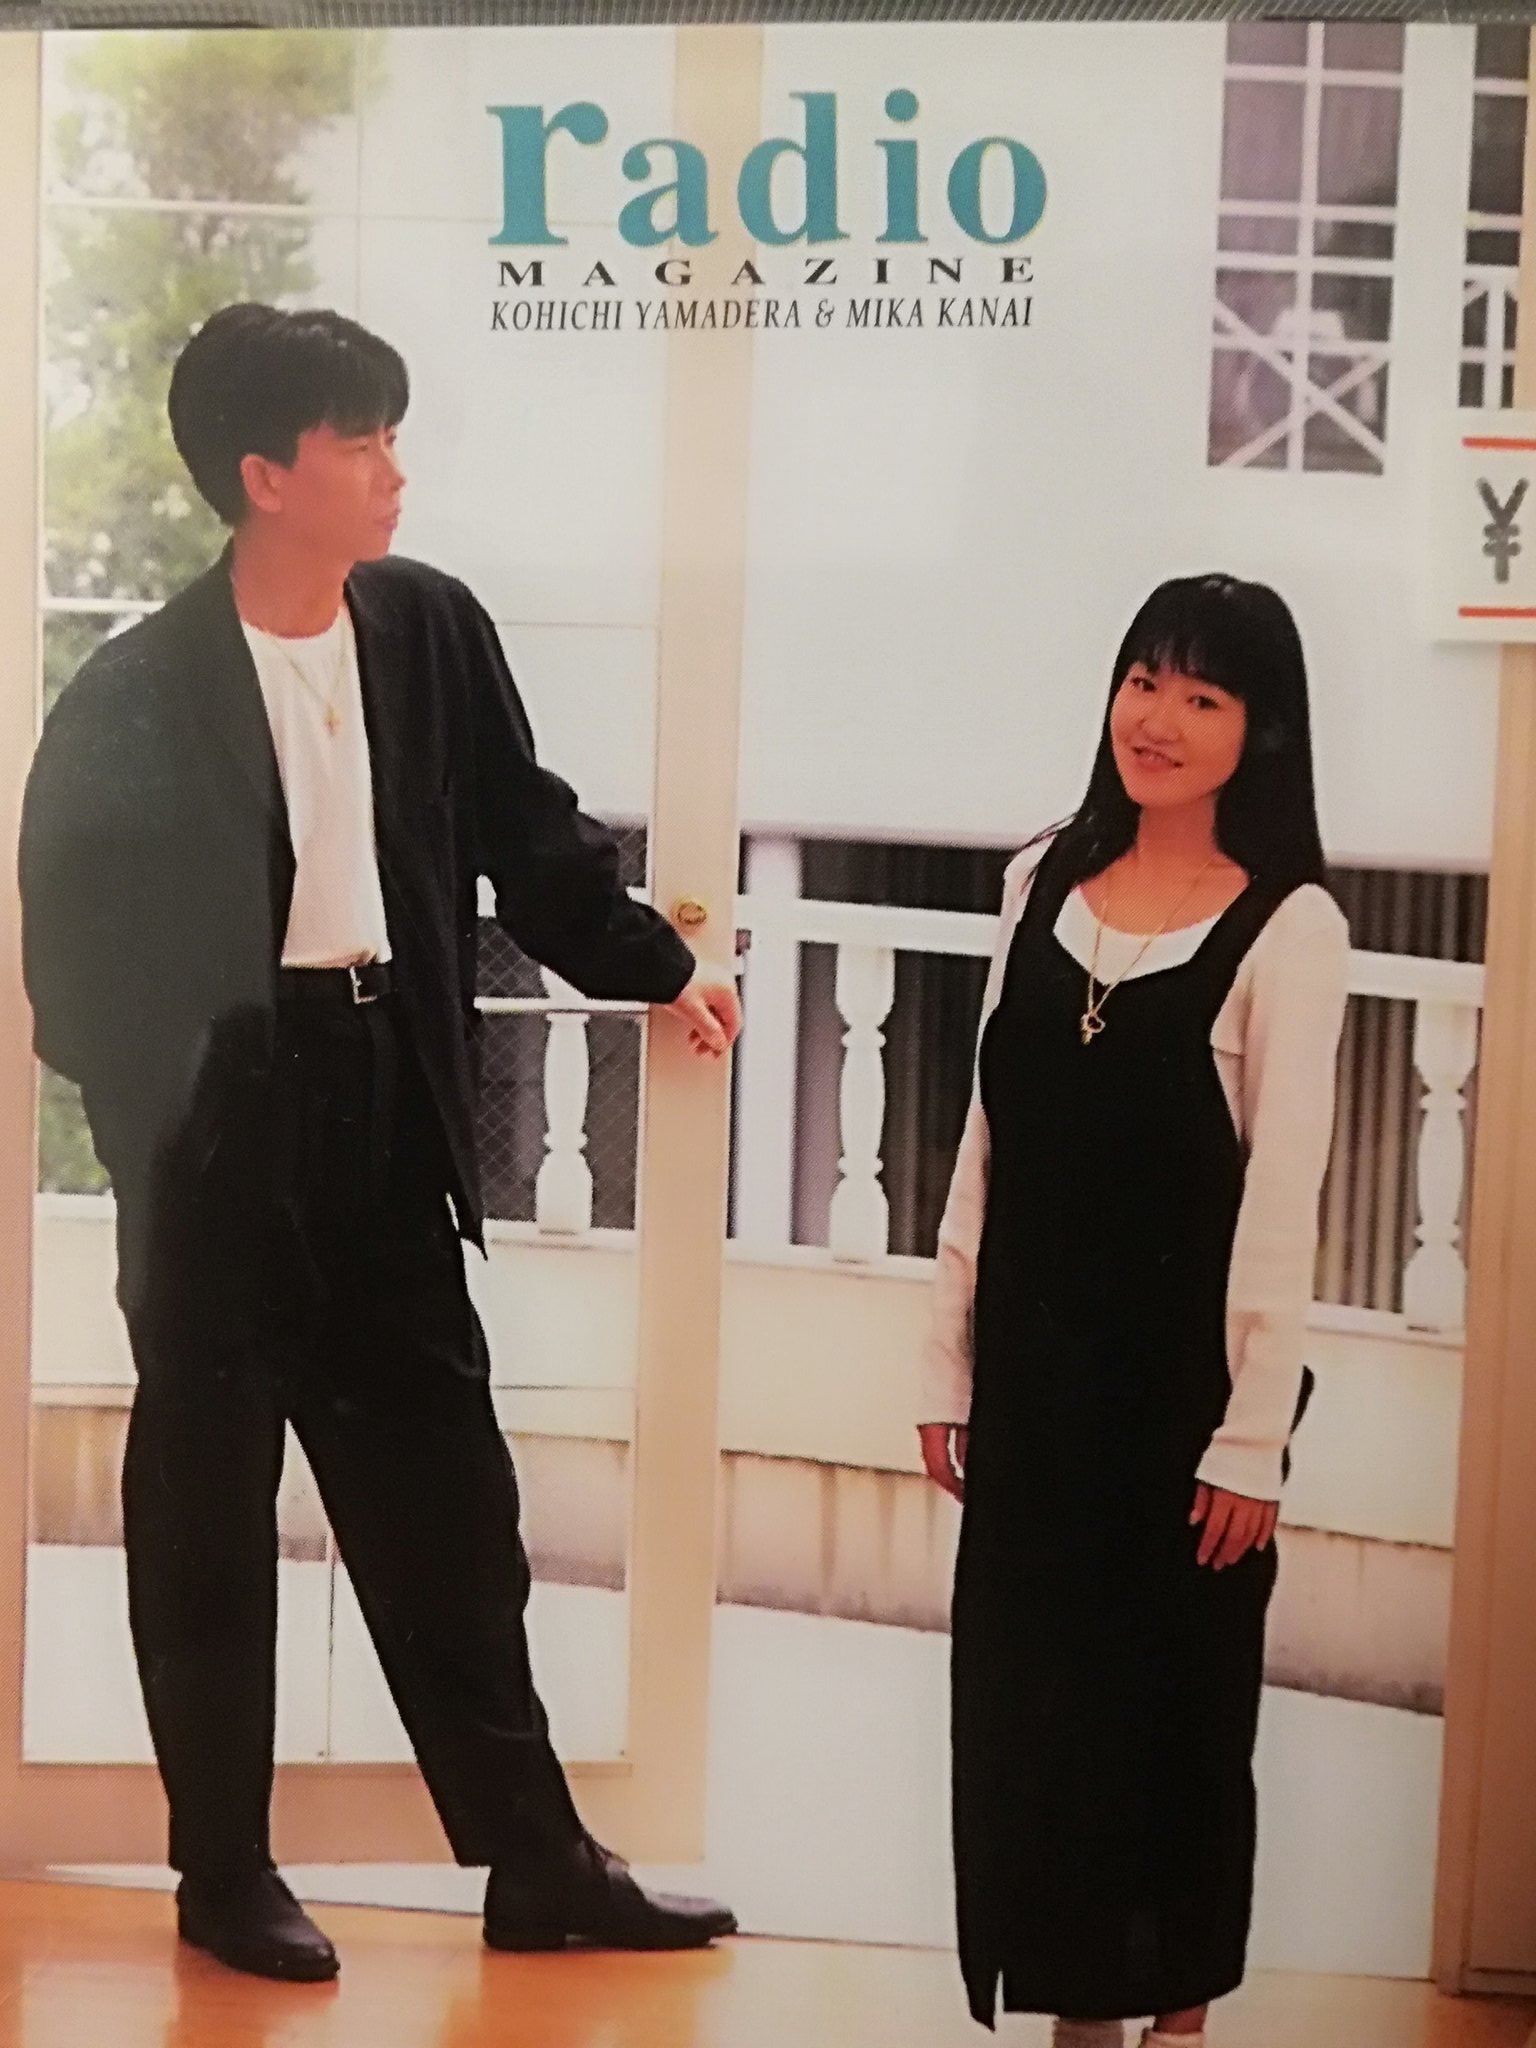 かないみかと山寺宏一の2人は1993年に結婚した